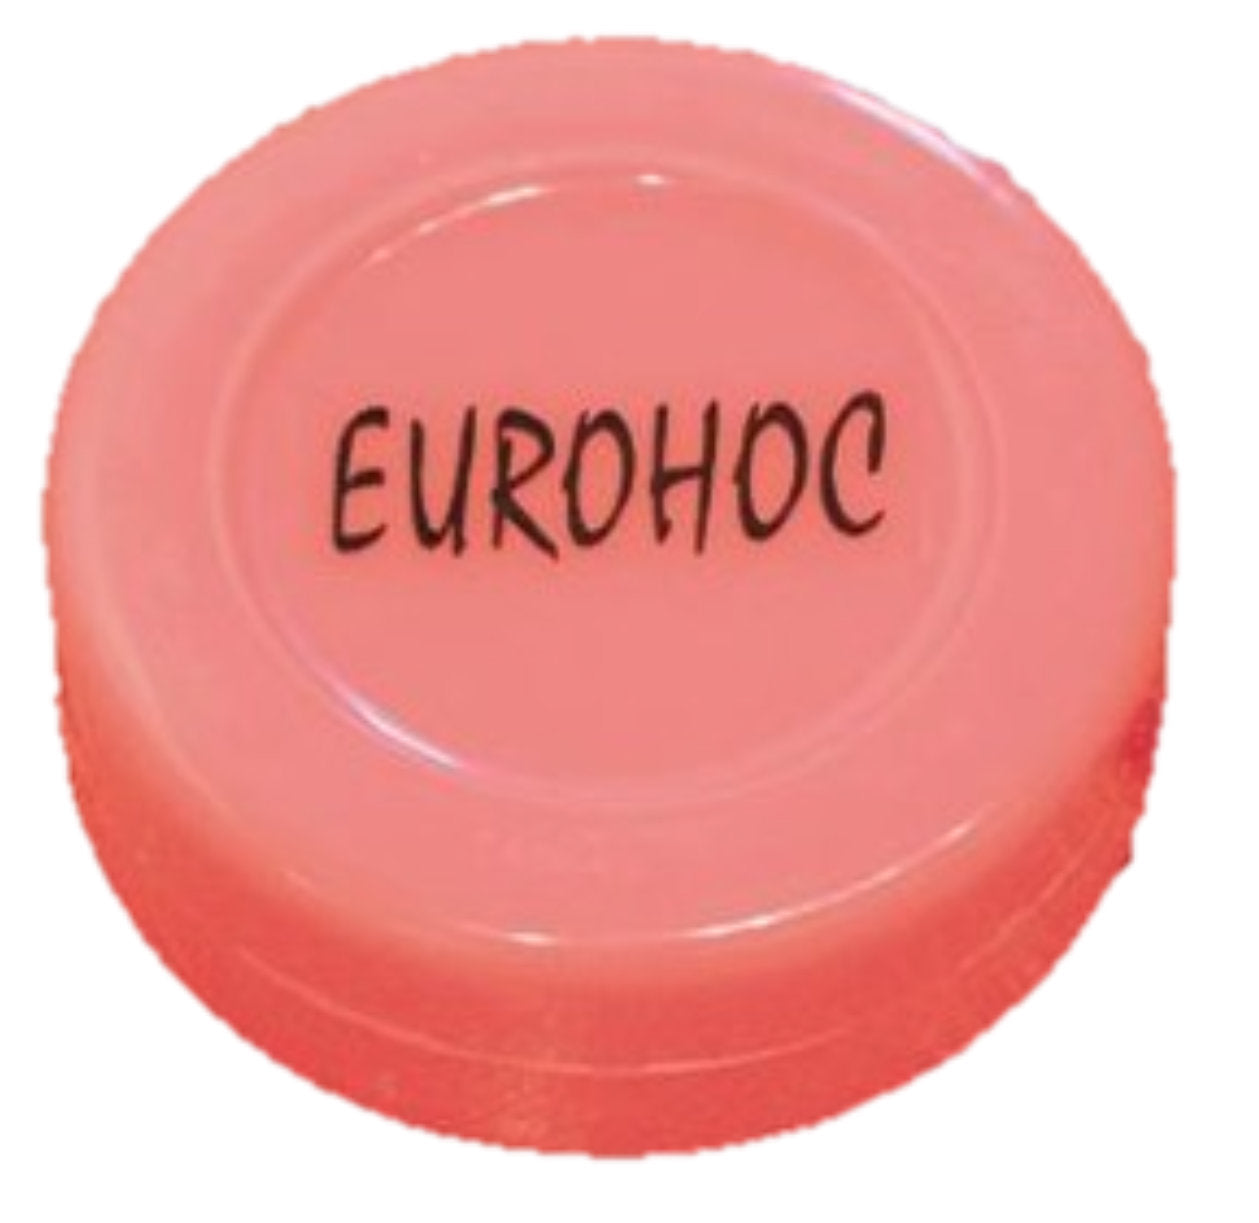 Eurohoc Flat Puck